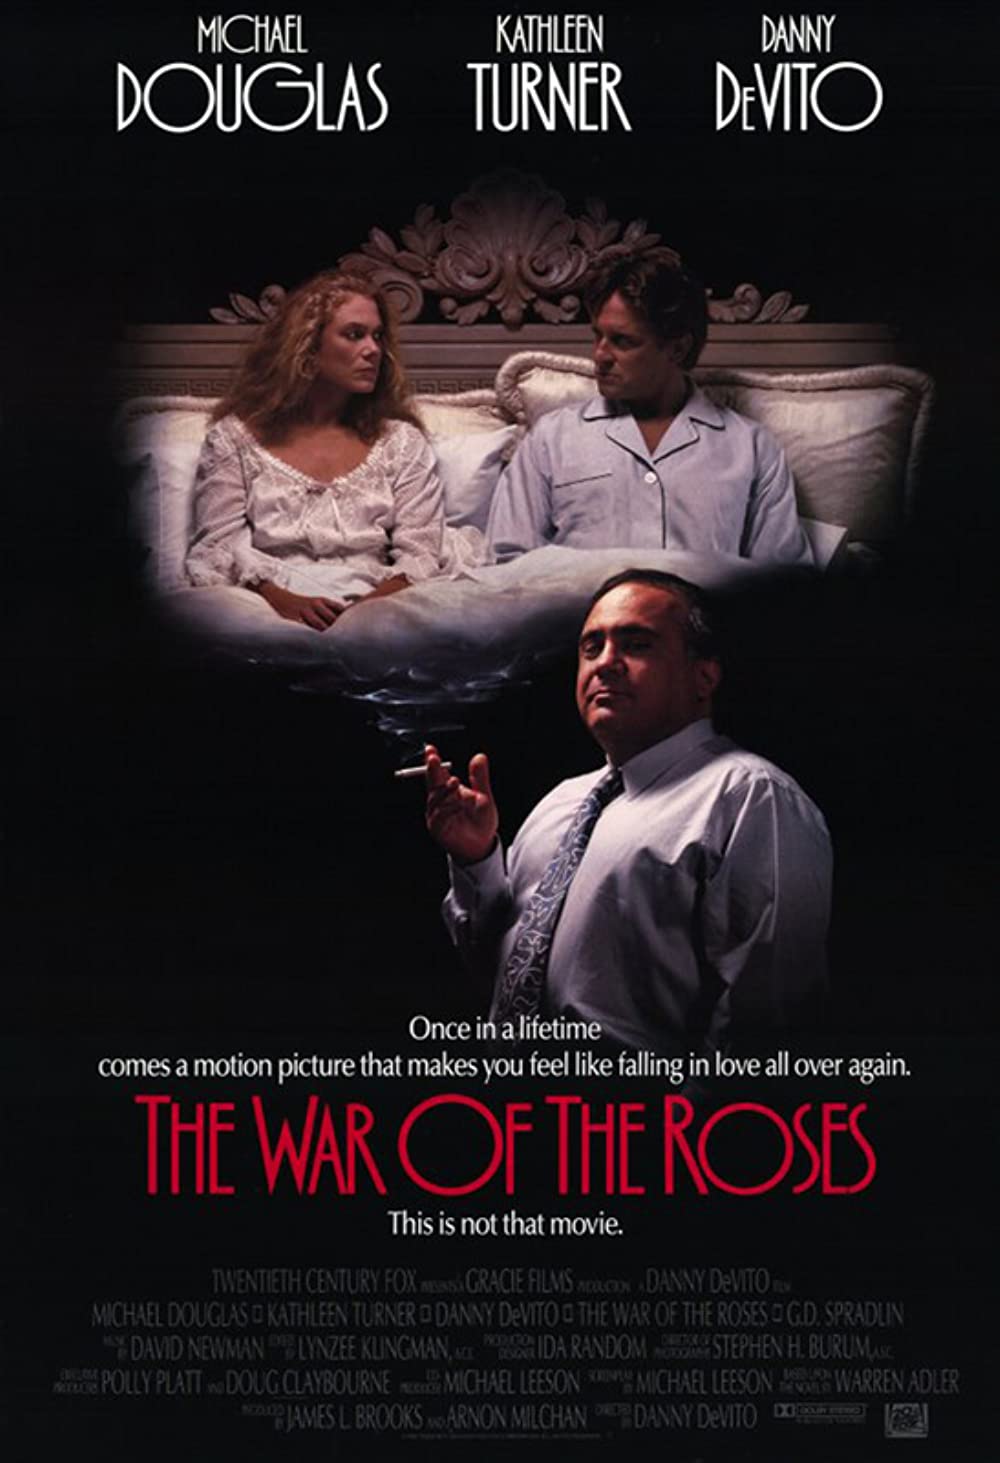 Filmbeschreibung zu Der Rosen-Krieg